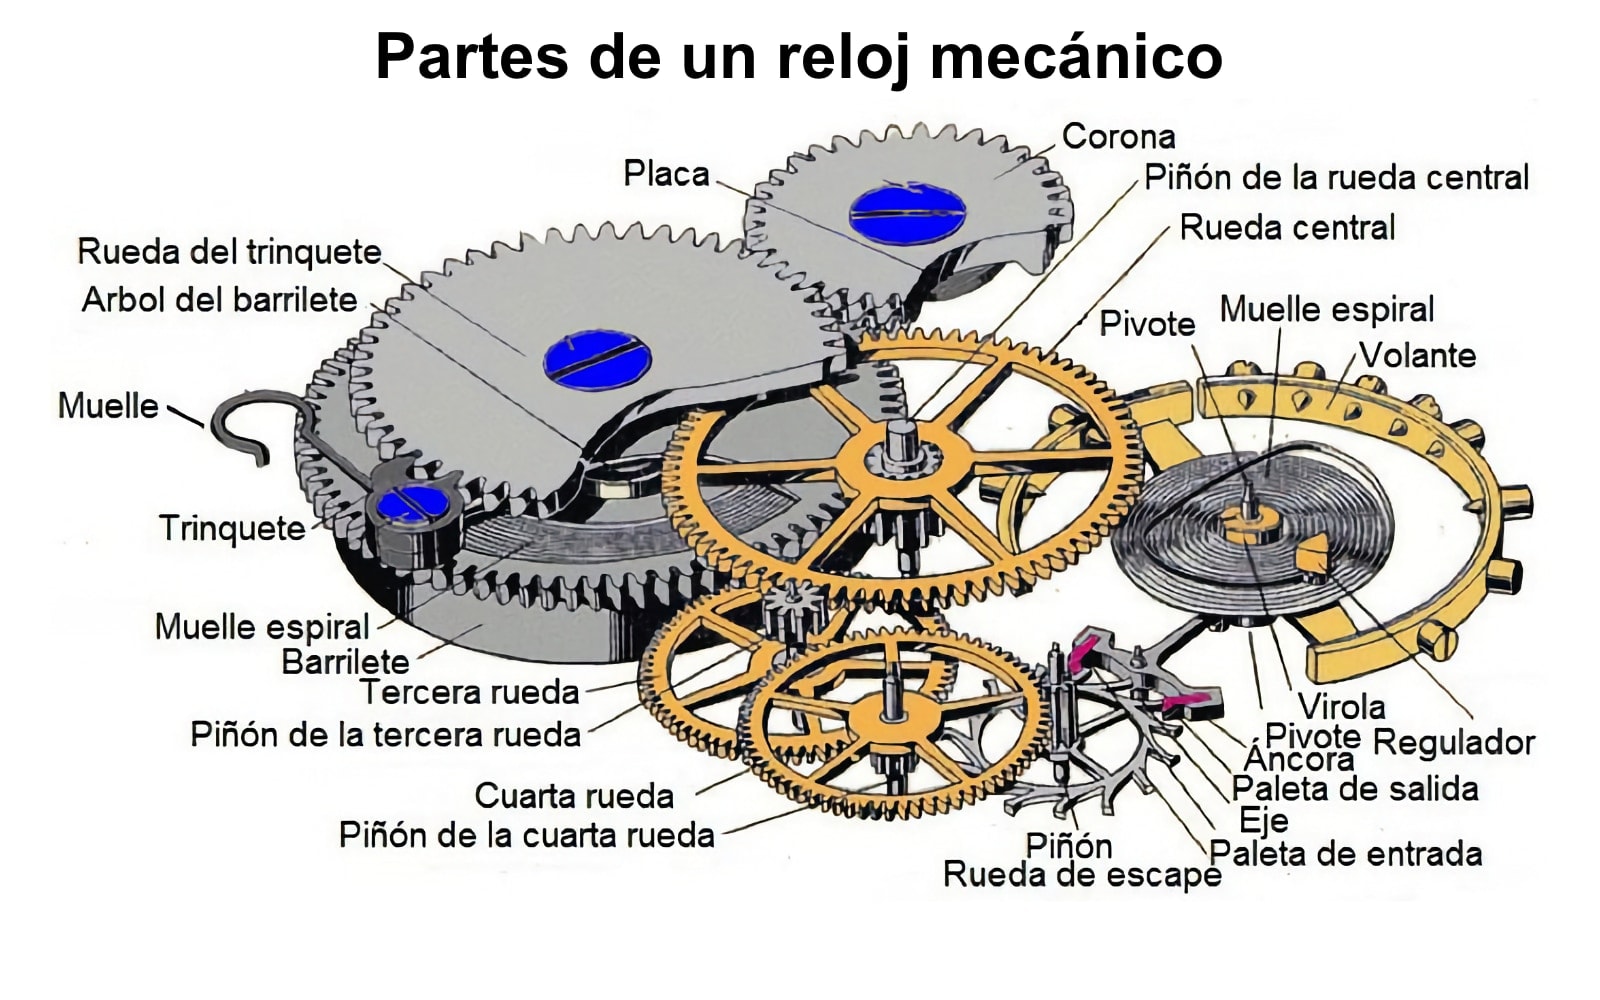 Diagrama con las Partes de un reloj mecánico: muelles, engranajes, oscilador...